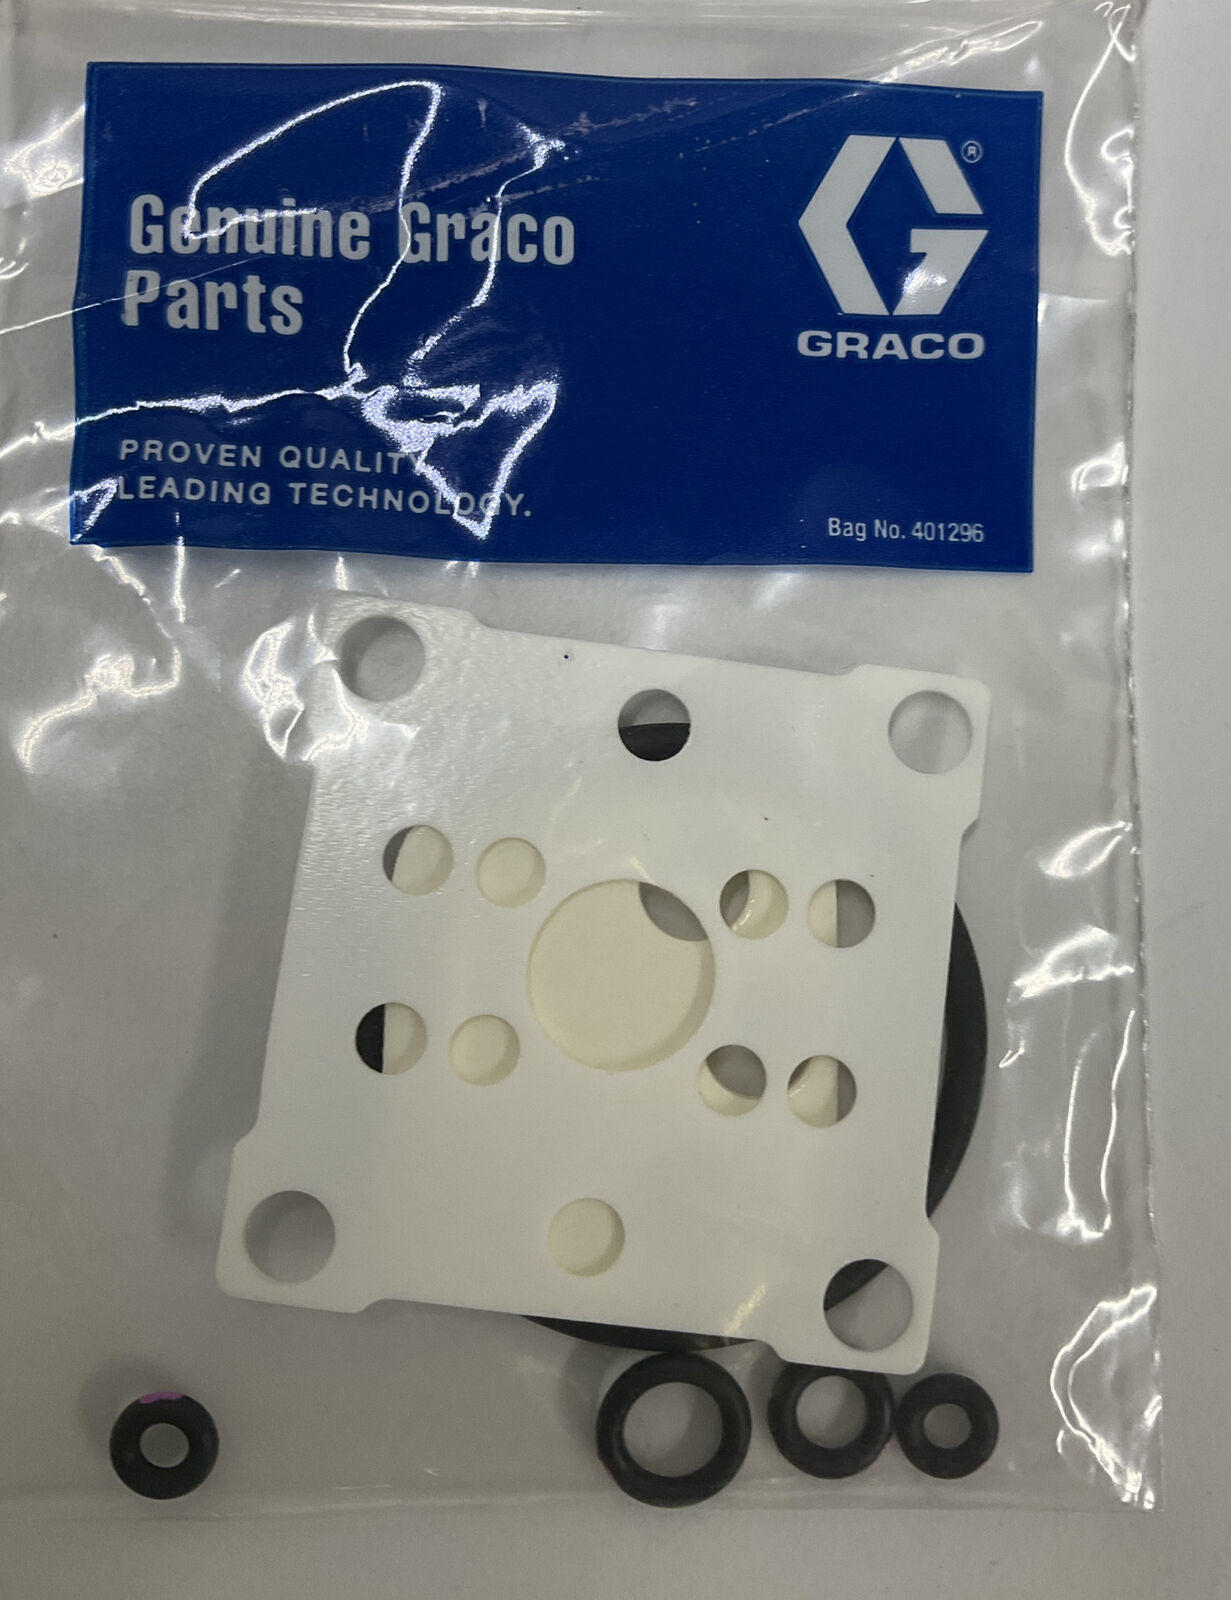 Graco 241698 Air Seal Repair Kit (YE229)